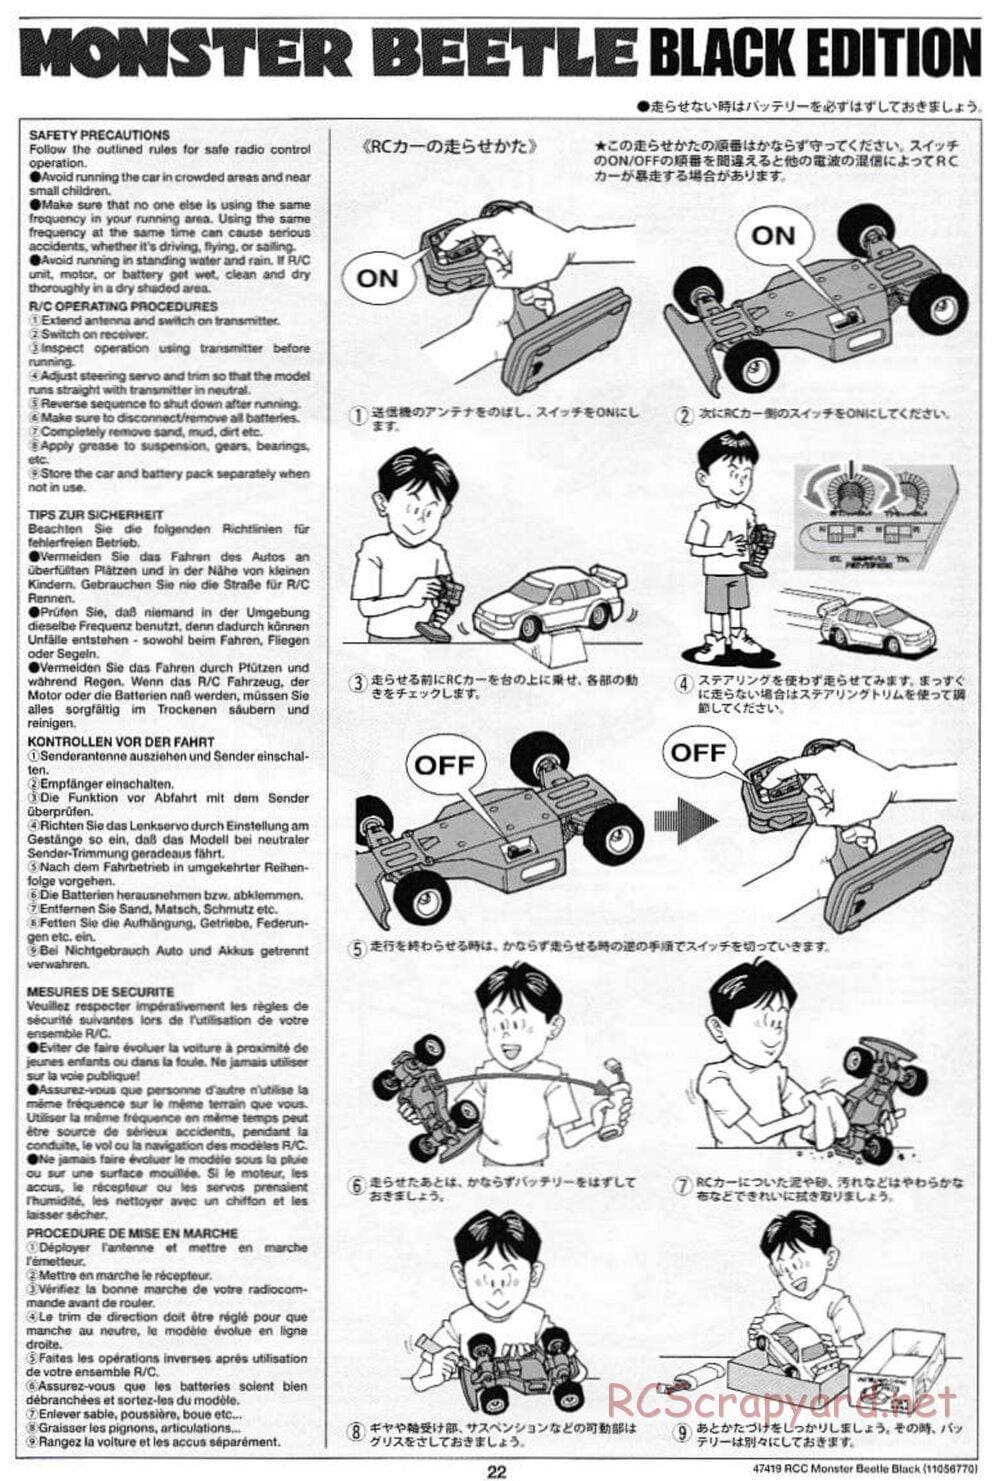 Tamiya - Monster Beetle Black Edition - ORV Chassis - Manual - Page 22